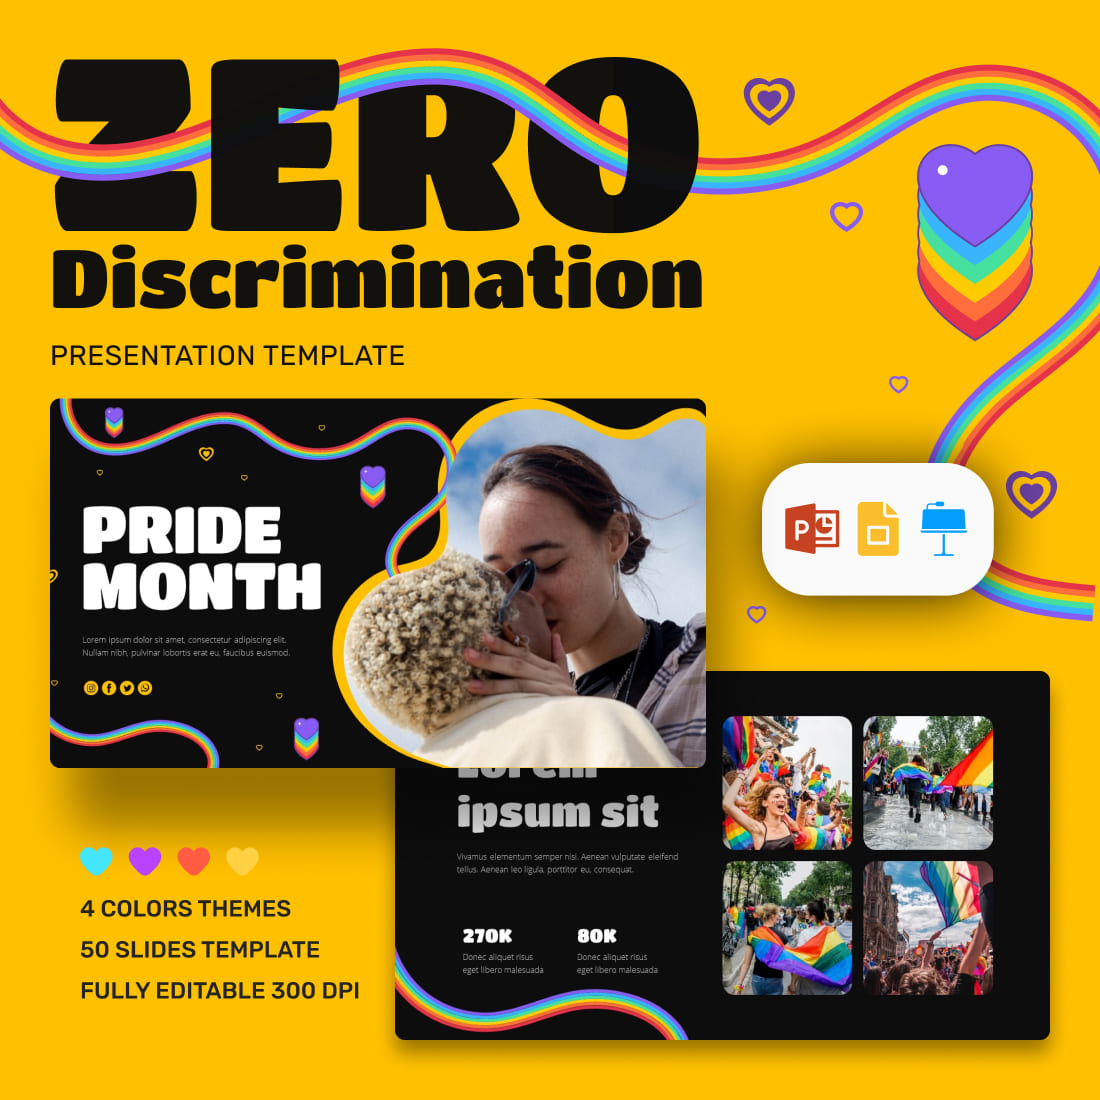 Zero Discrimination Presentation Template.